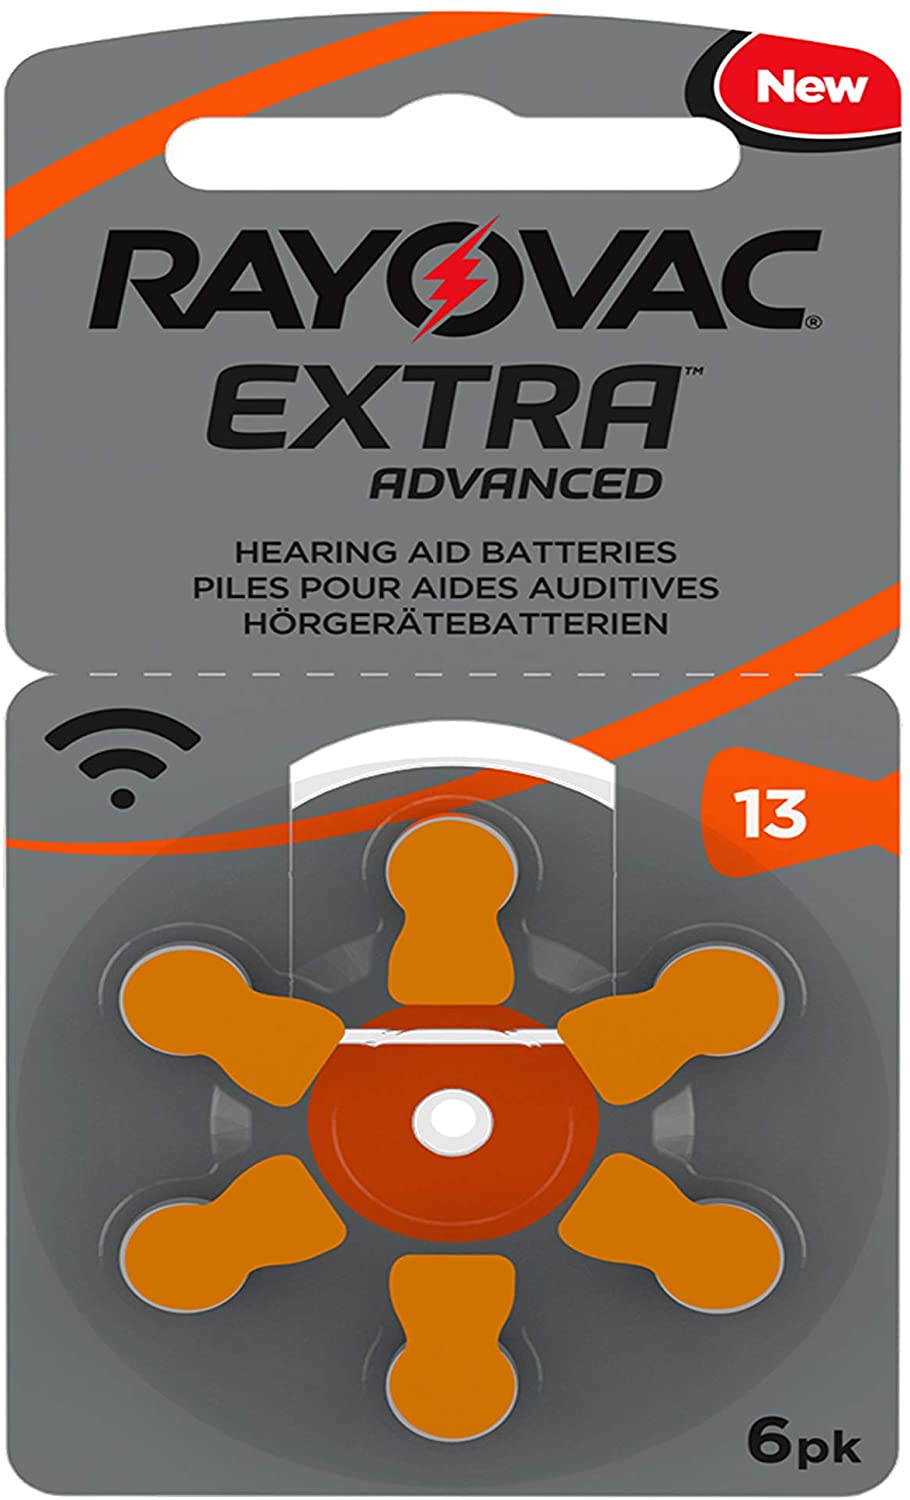 Rayovac Extra Advanced Batterie Acustiche Zinco Aria, Formato 13 Value Pack da 30 Batterie, Arancione